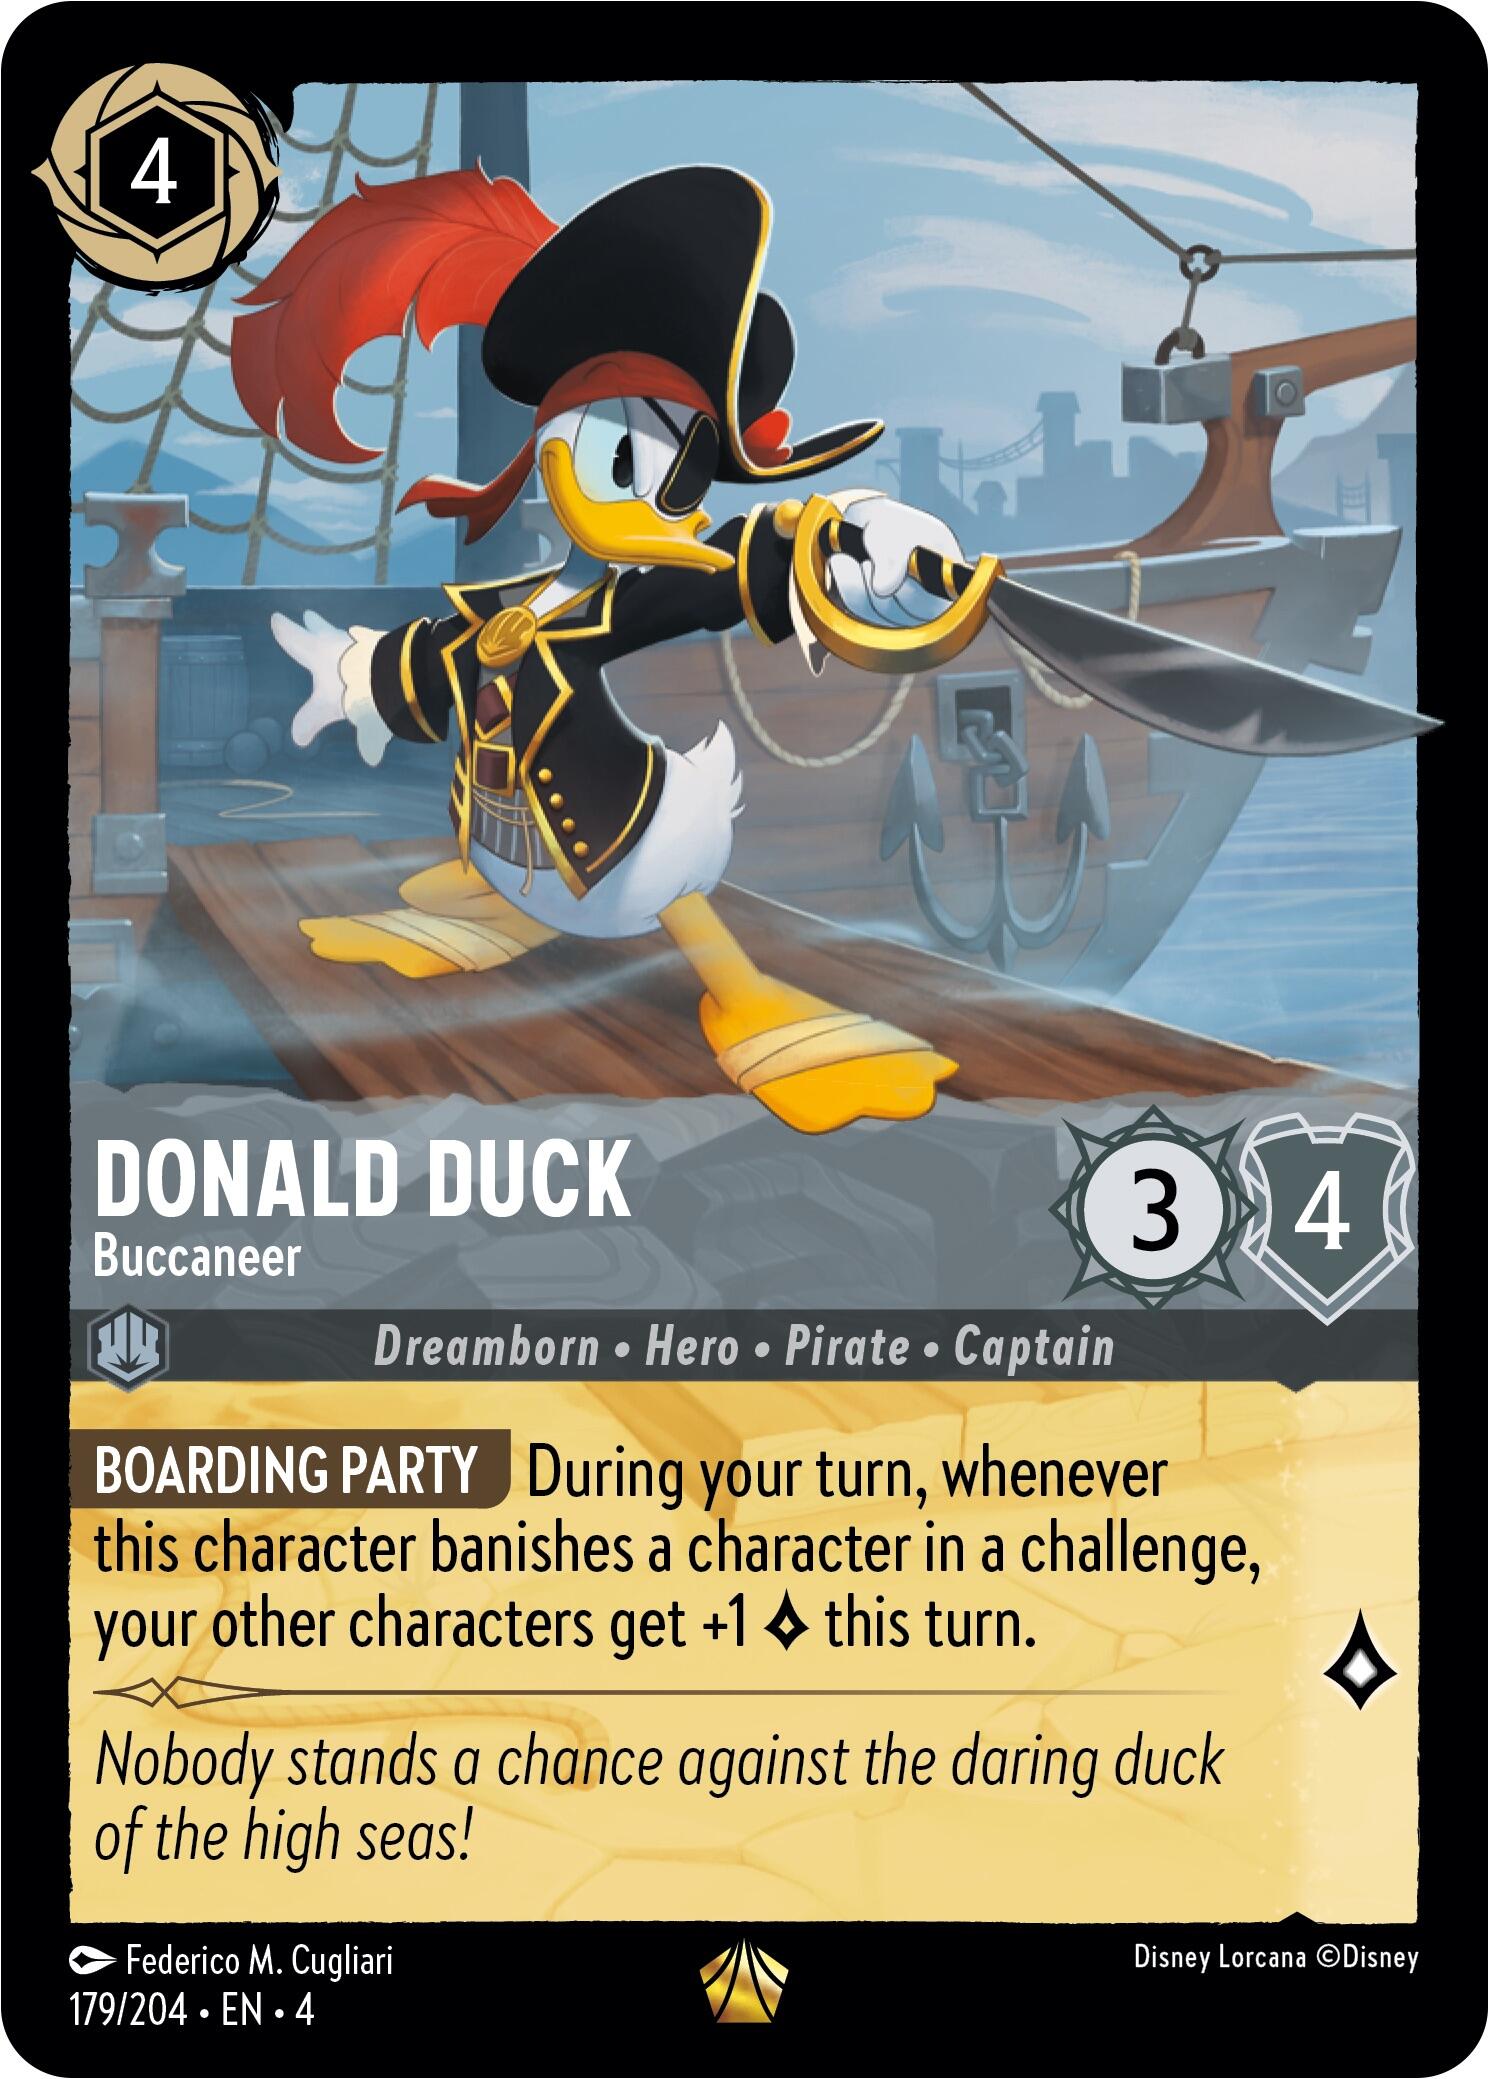 Donald Duck - Buccaneer (179/204) [Ursula's Return] | North Valley Games